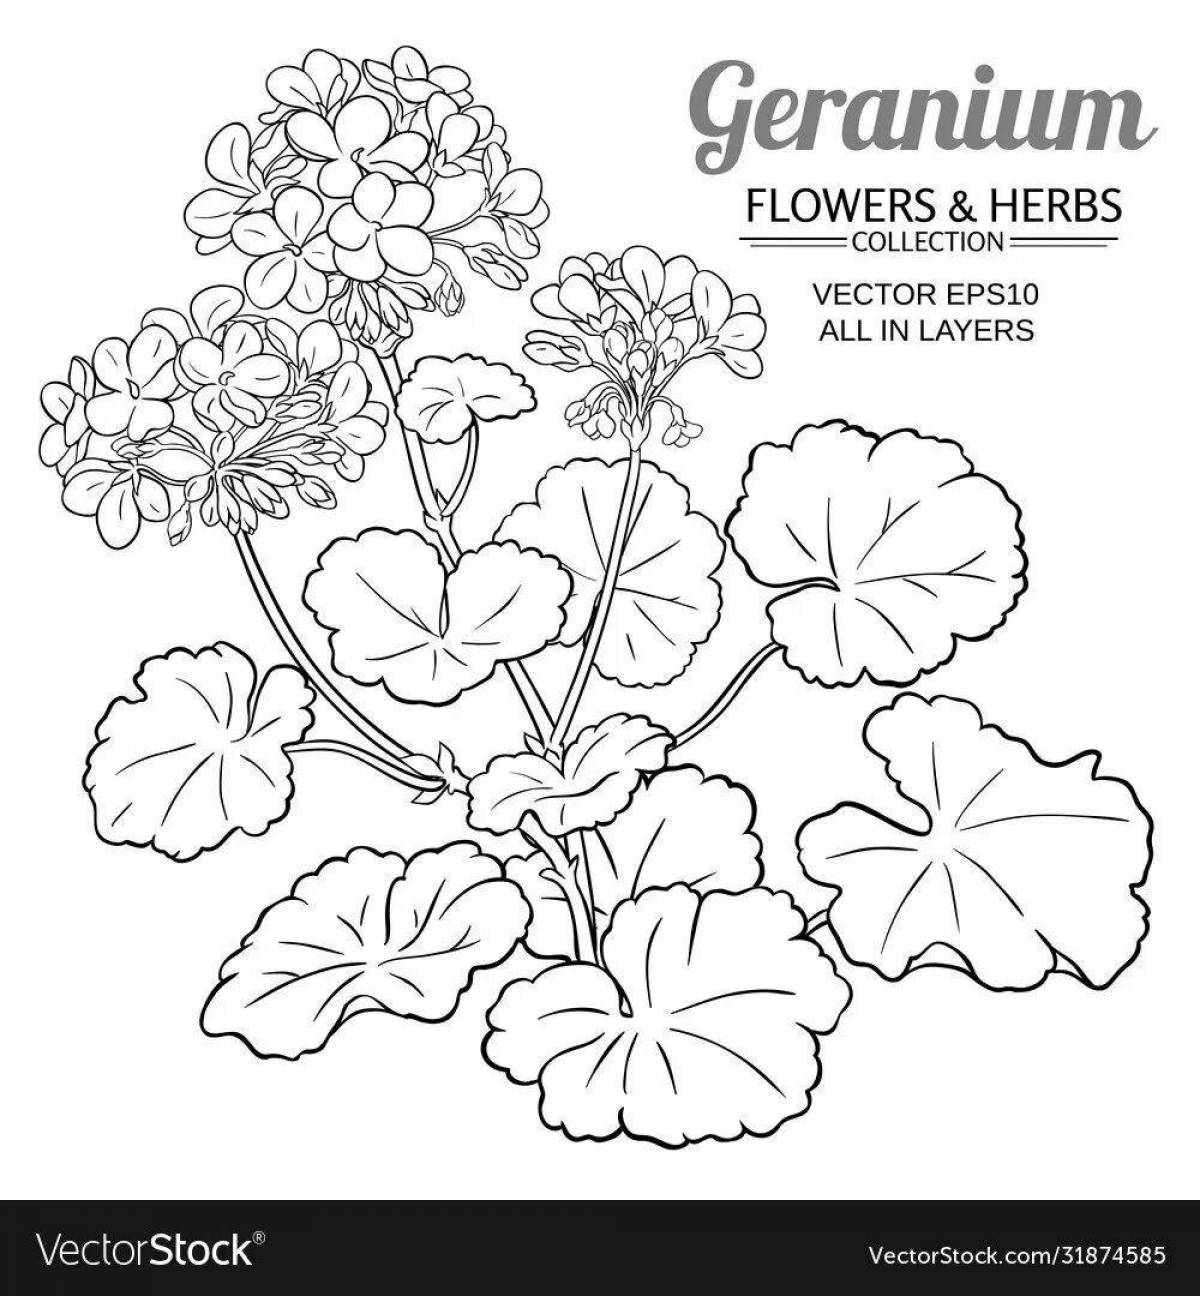 Adorable indoor plants coloring book for preschoolers